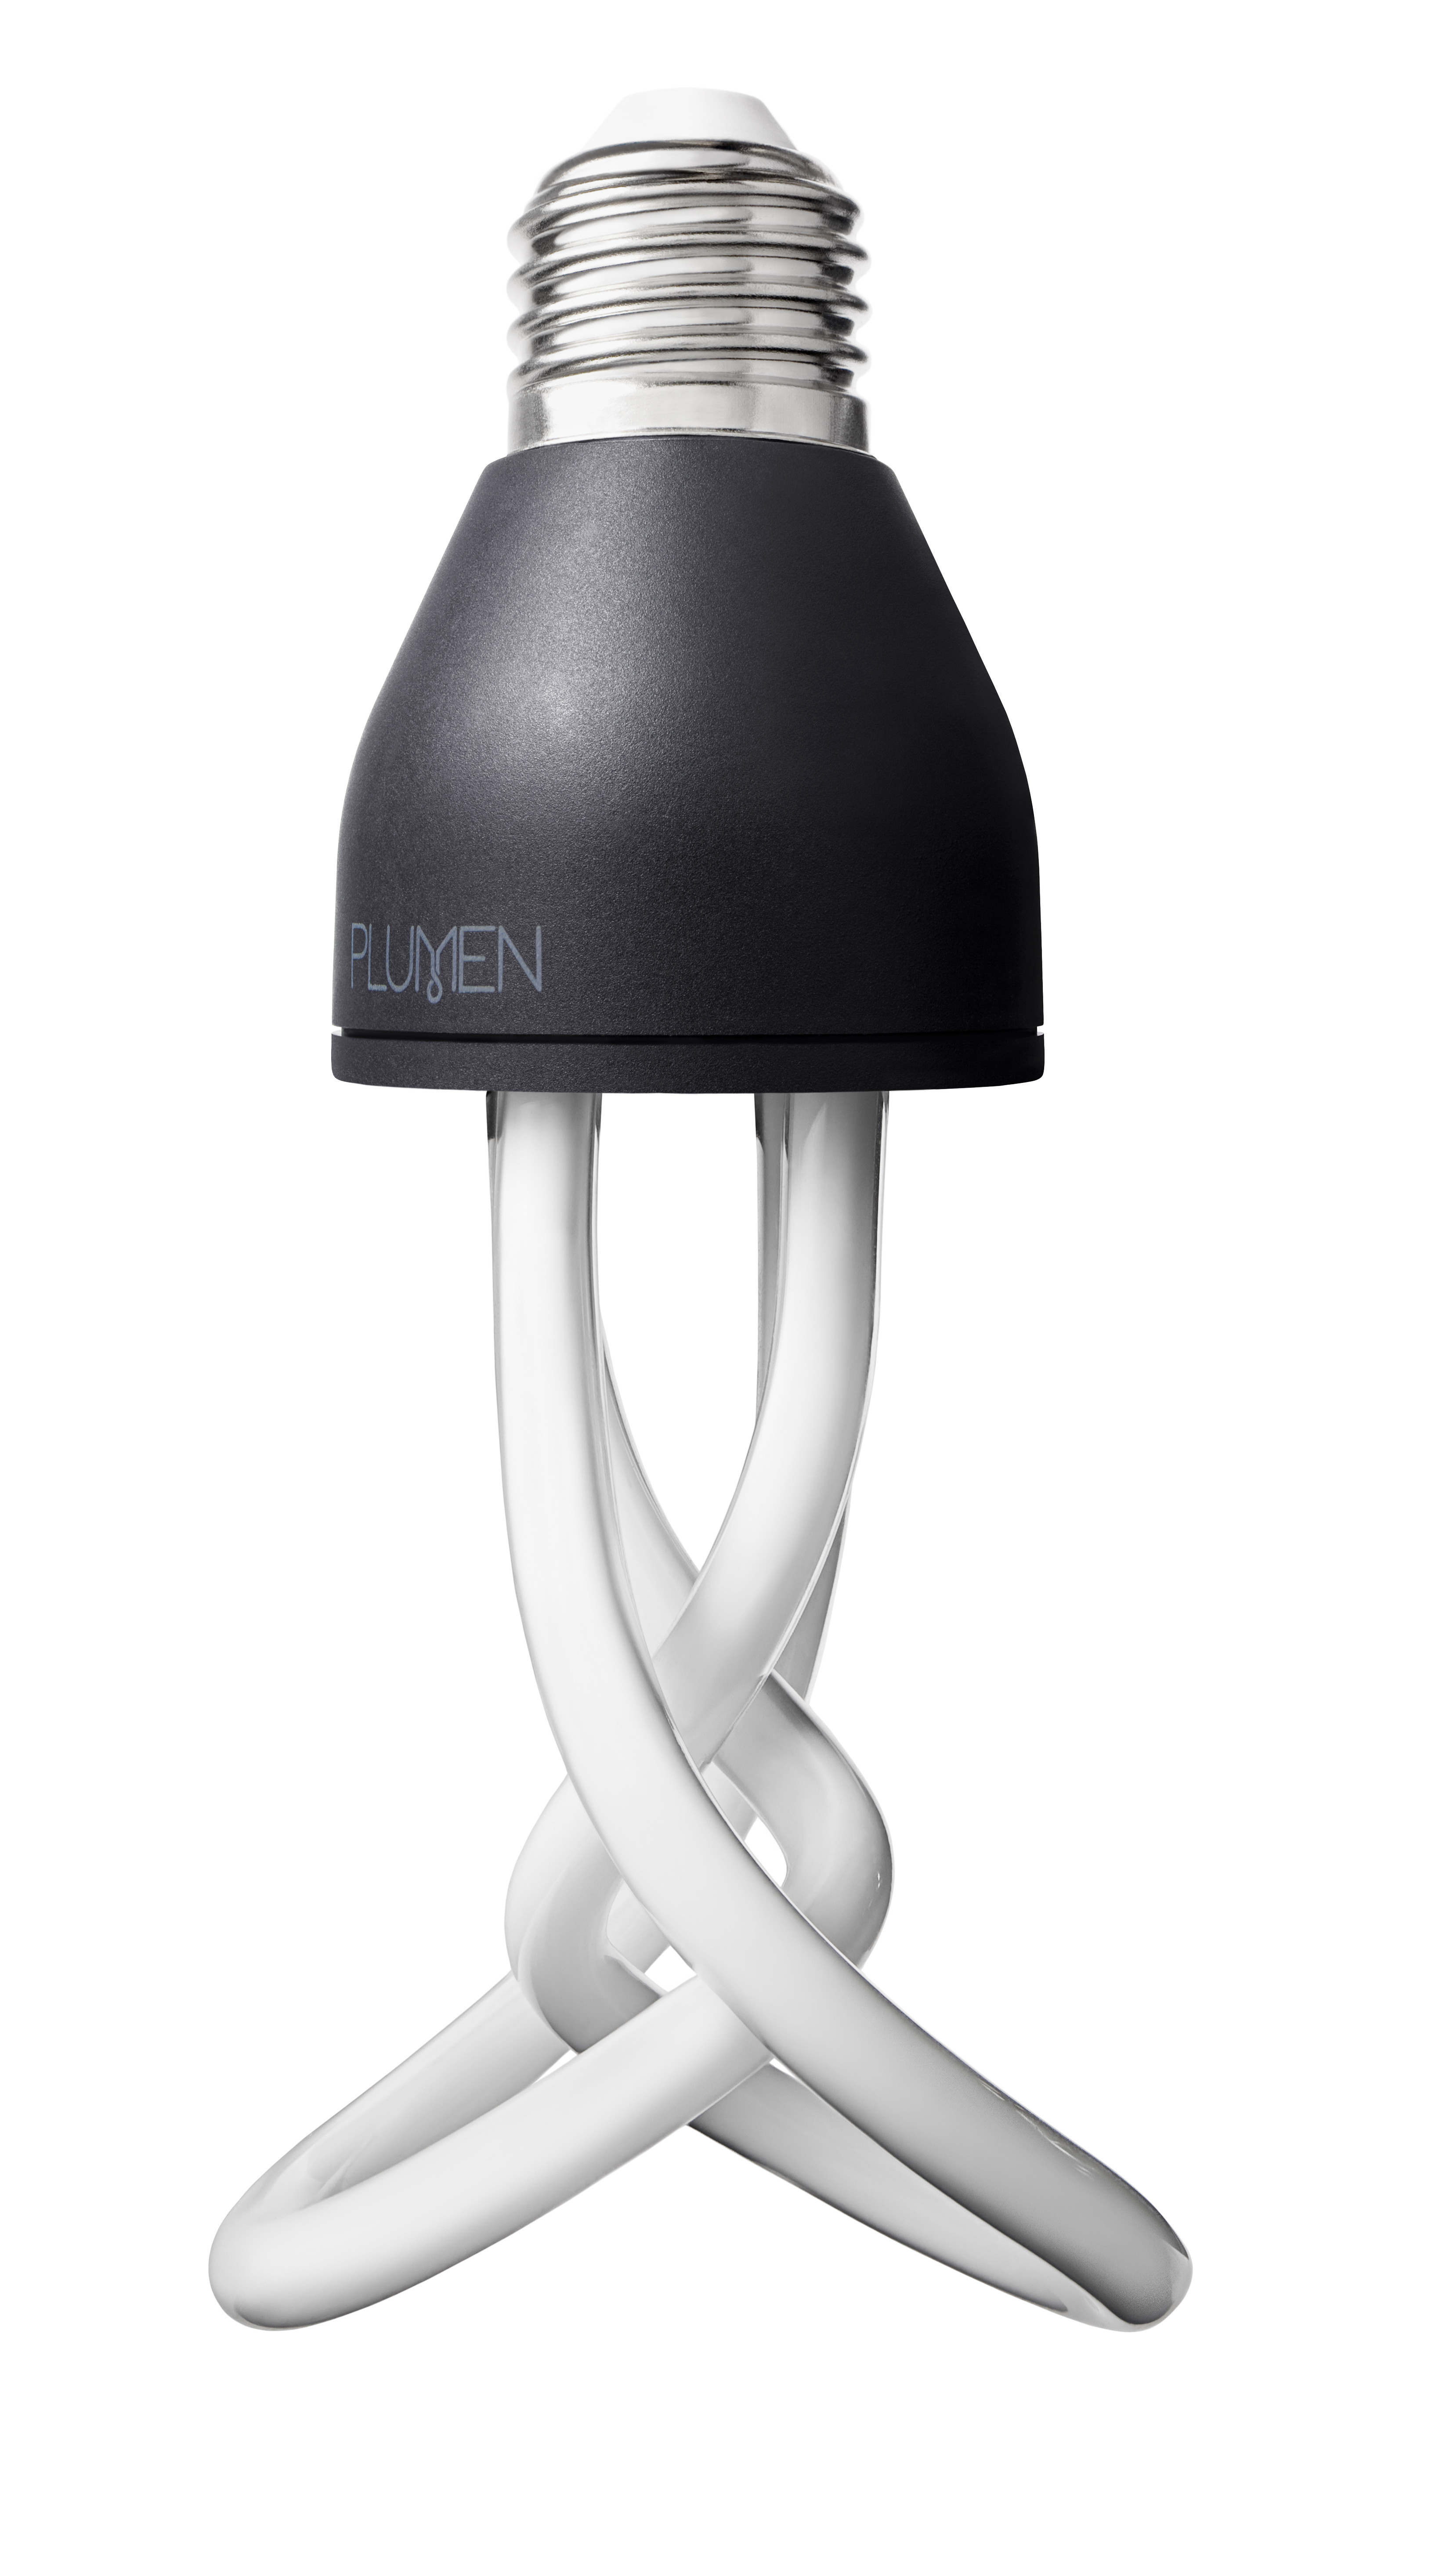 Baby Plumen - Design Low Energy Light Bulb